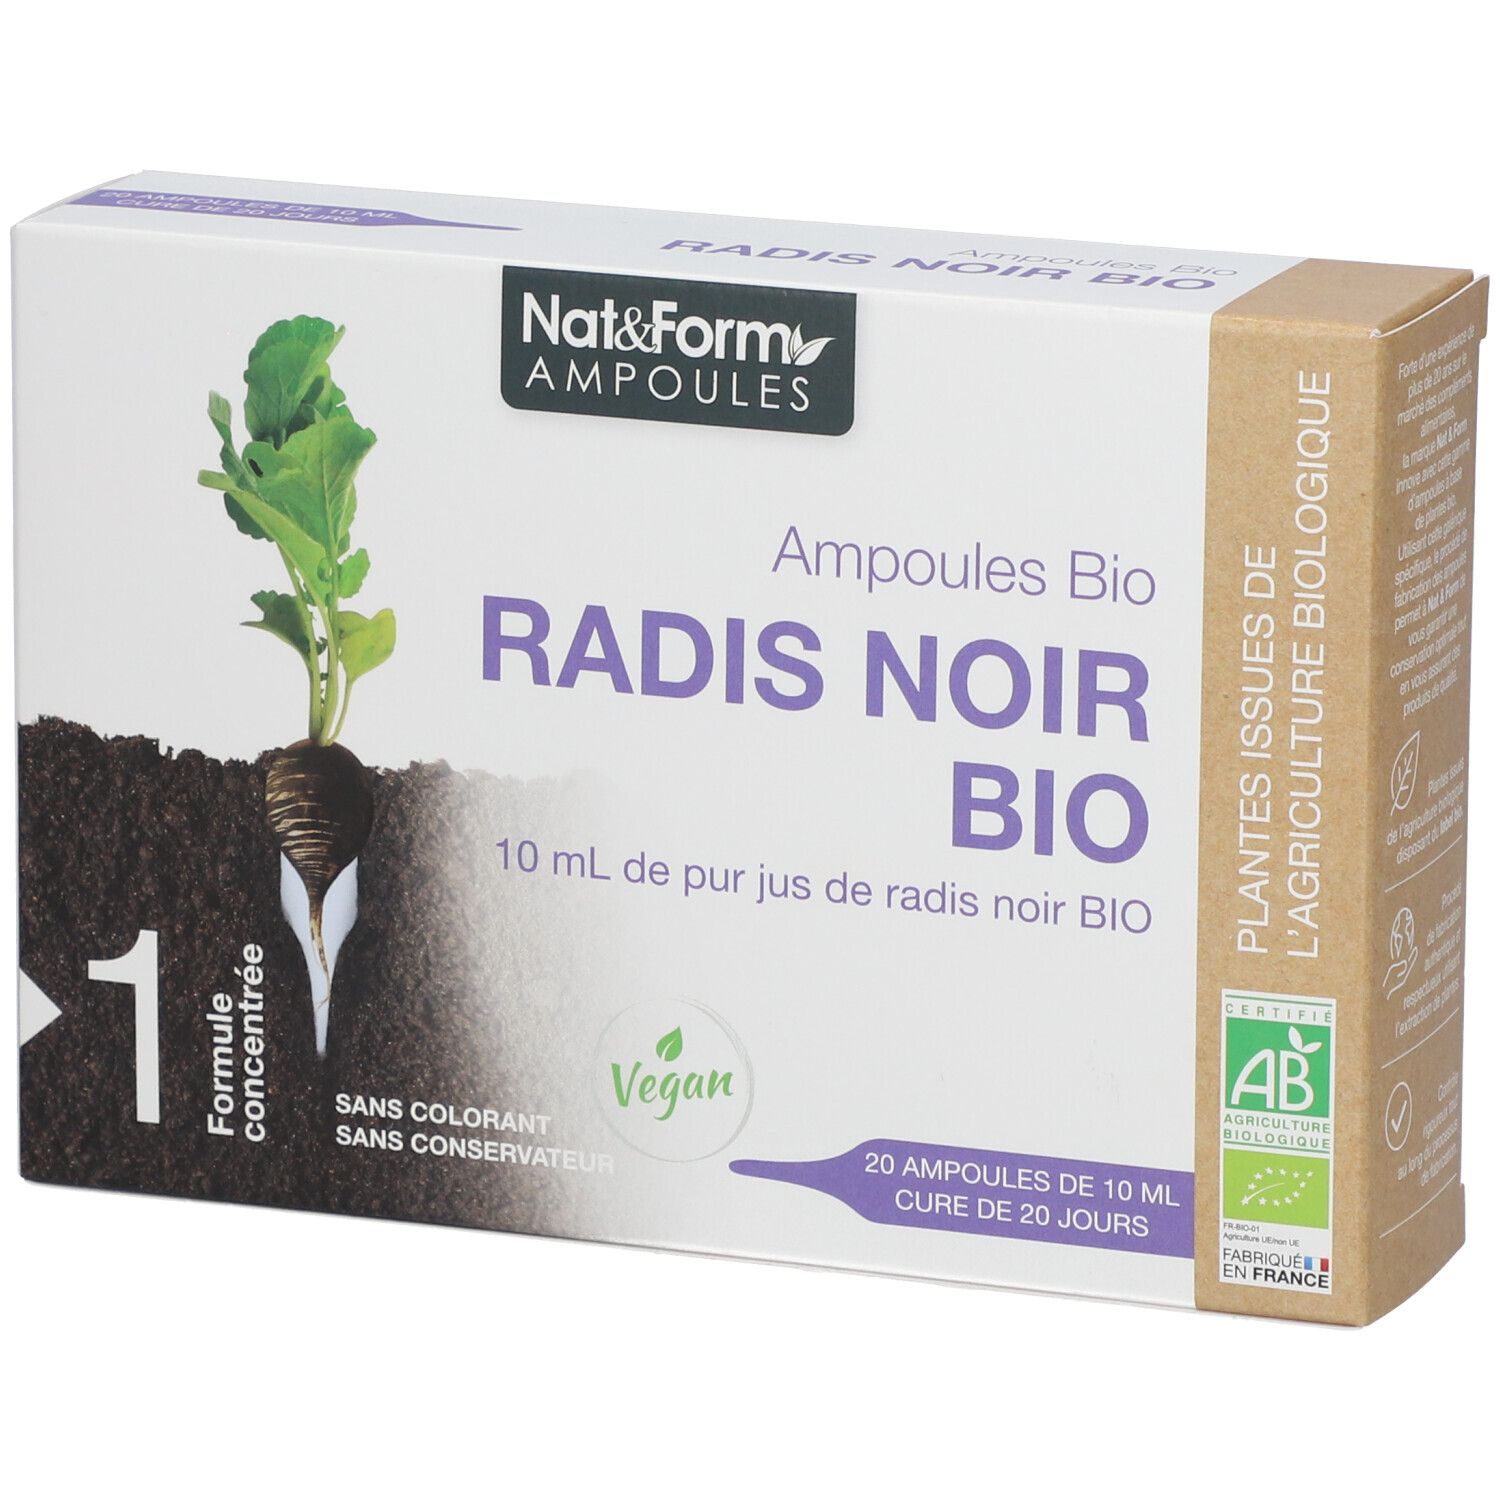 Nat & Form Ampoules Radis noir Bio